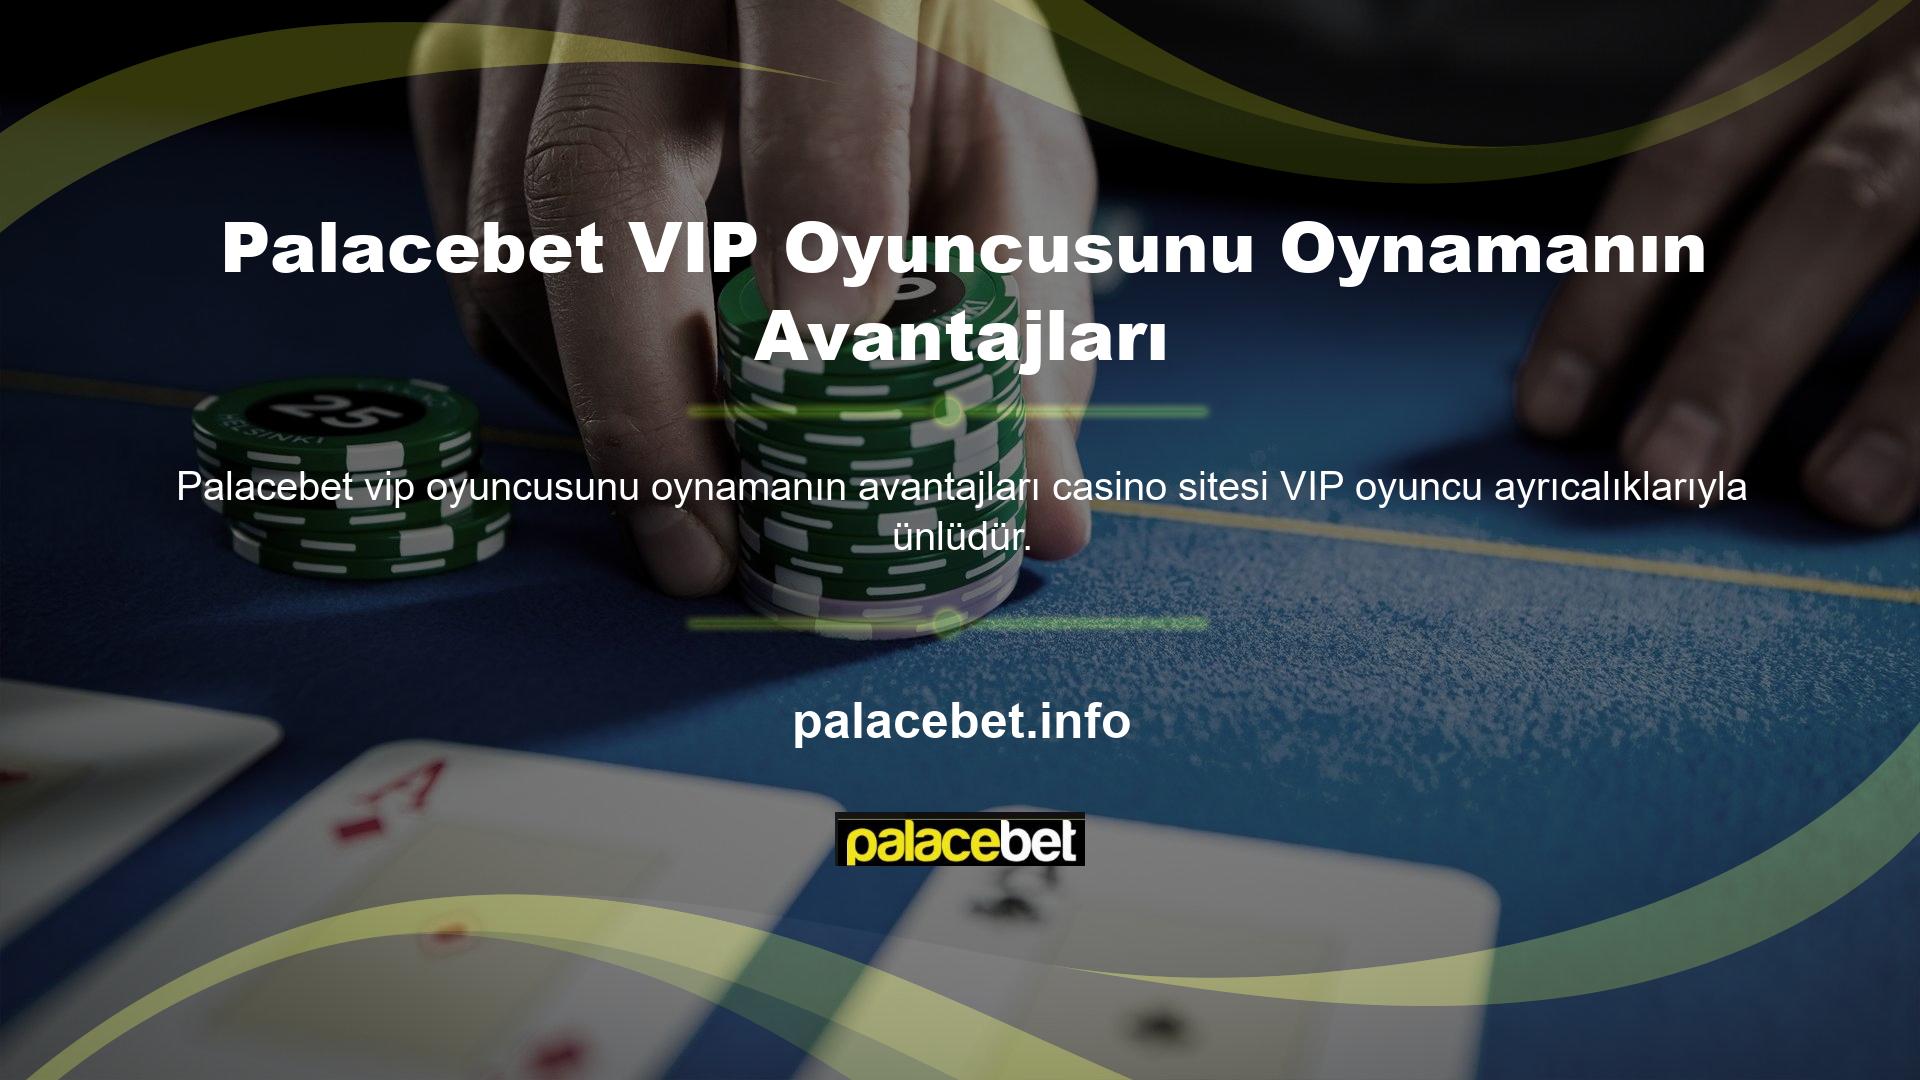 ' Palacebet ile aynı fırsata sahip değiliz ancak başka bir güvenilir Casino sitesinde VIP oyuncu olmanın avantajlarından yararlanabilirsiniz